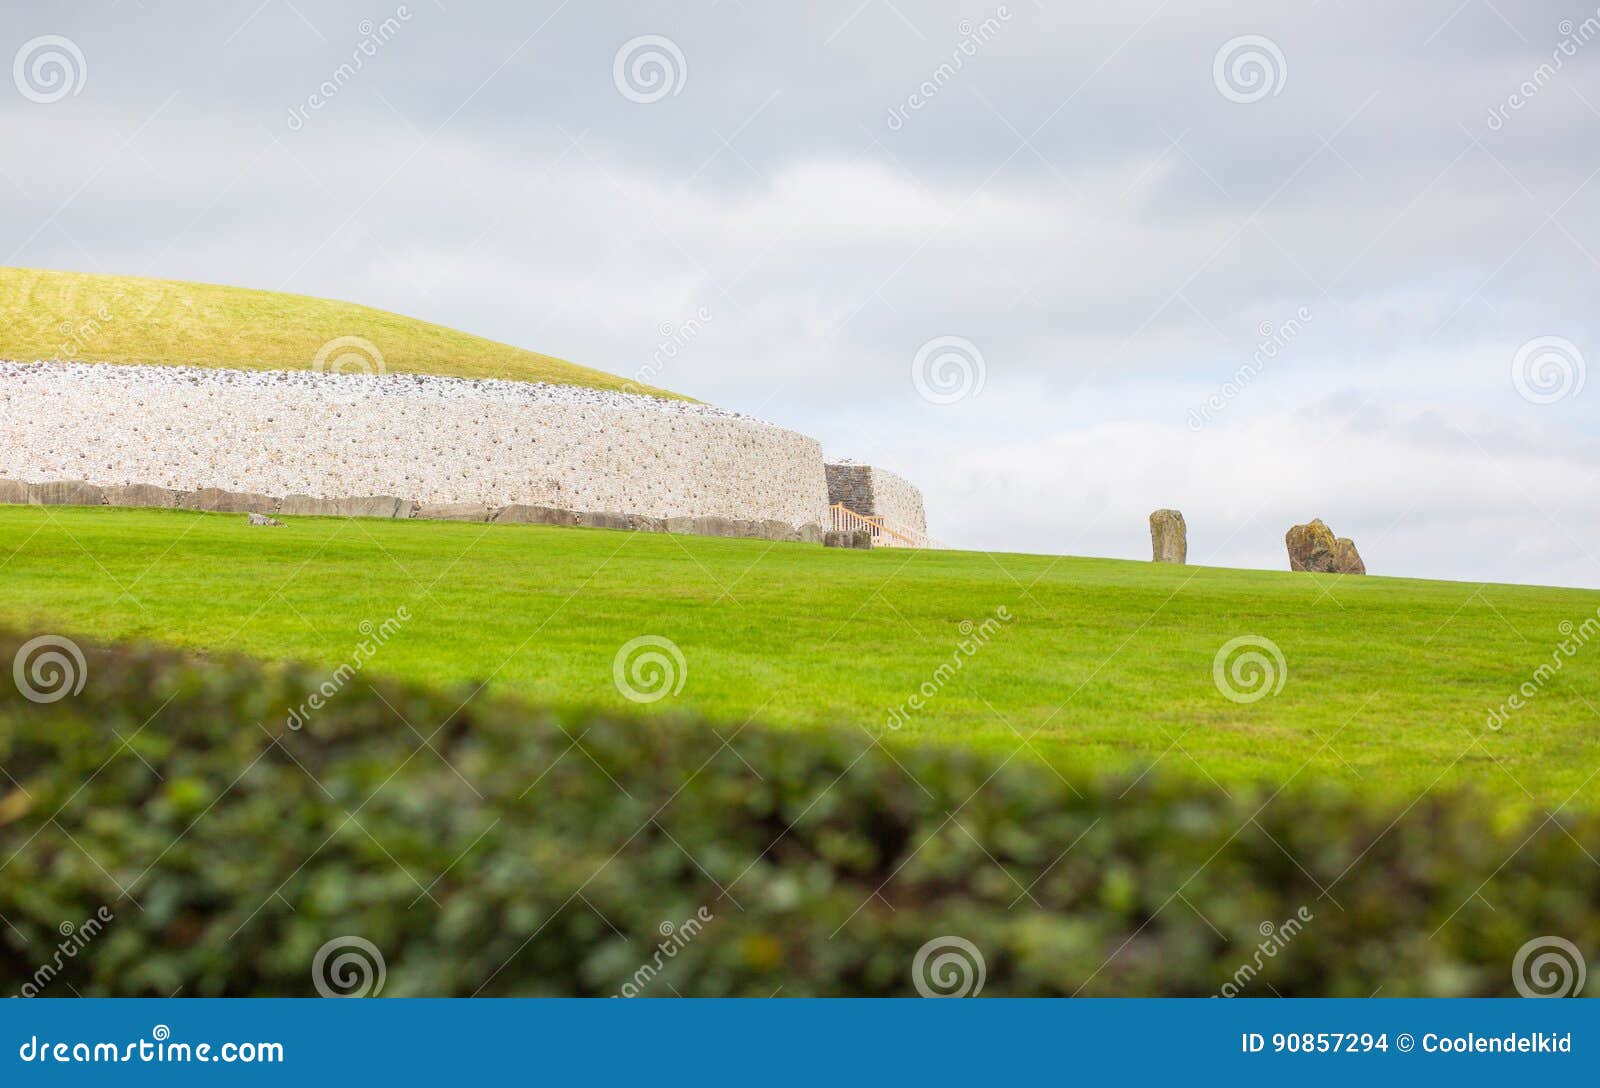 Newgrange förhistorisk monument nära floden Boyne